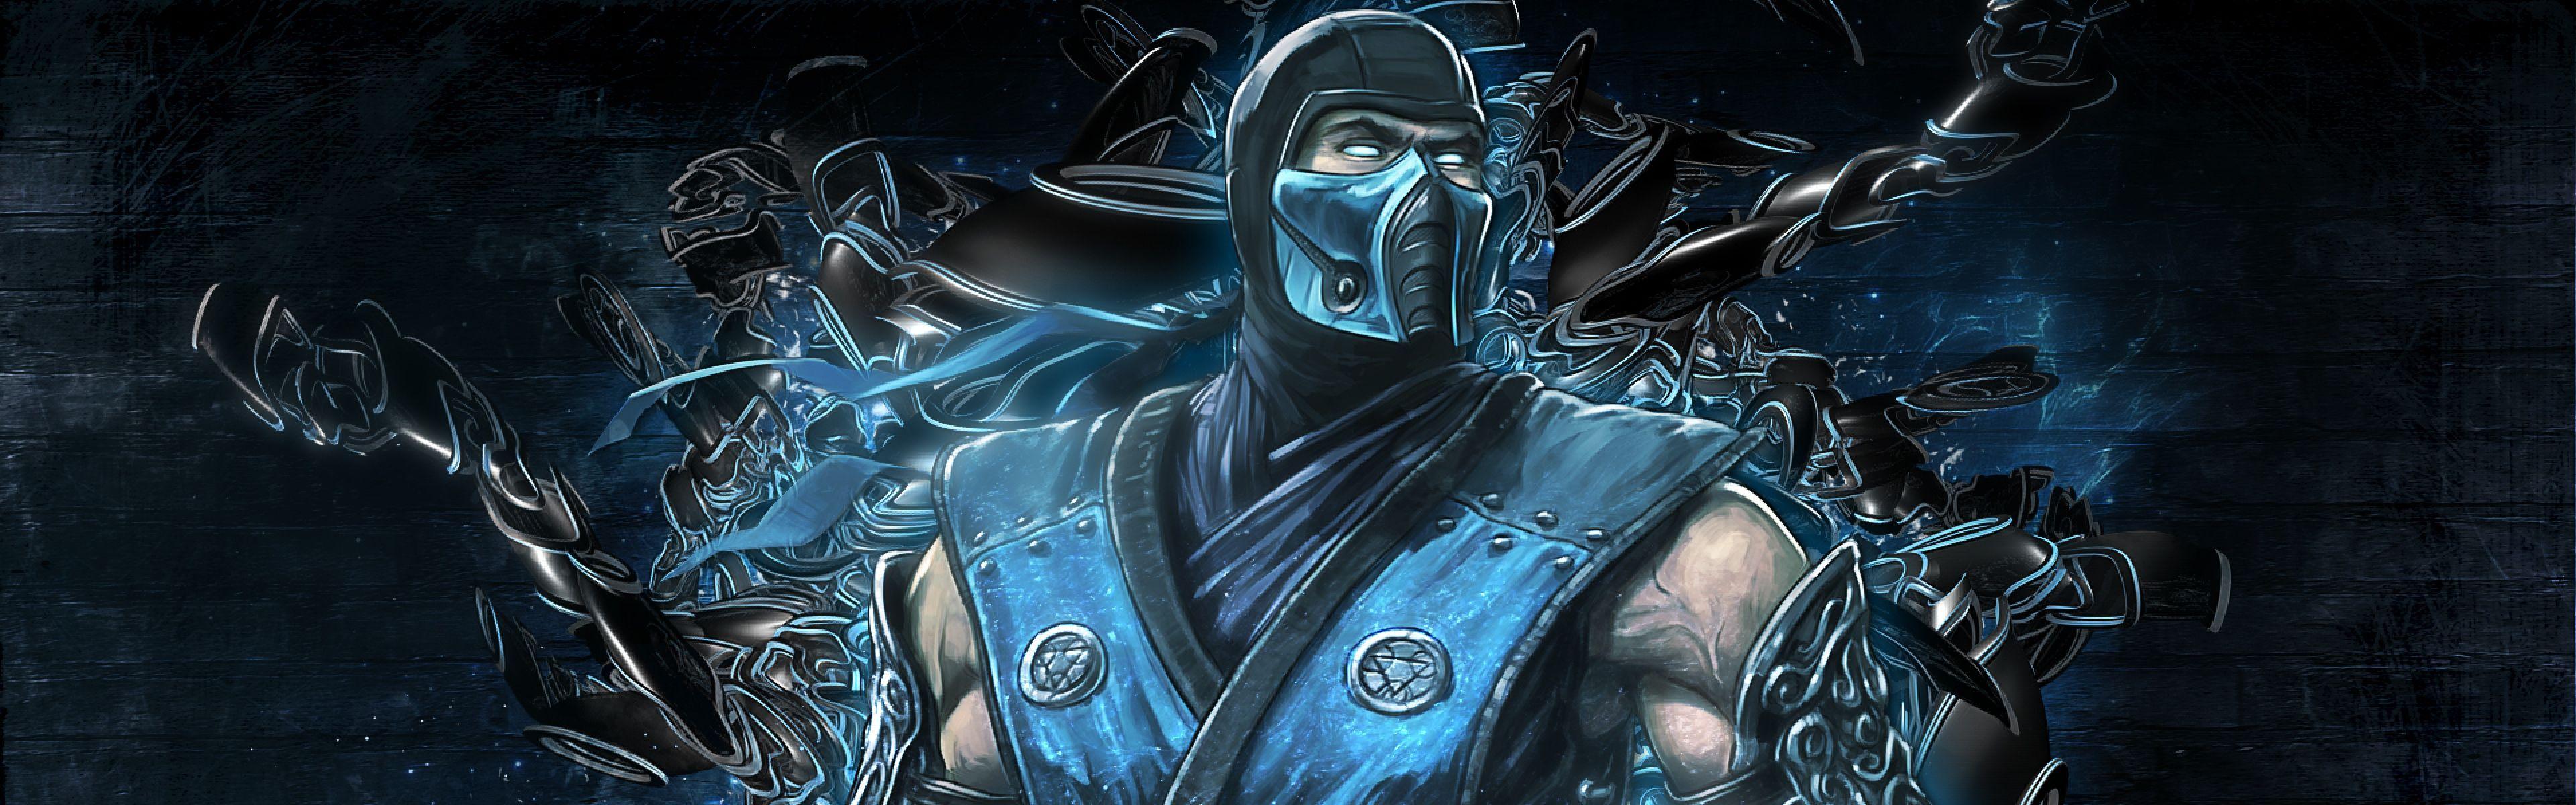 Mortal Kombat Sub Zero Wallpaper, Find best latest Mortal Kombat